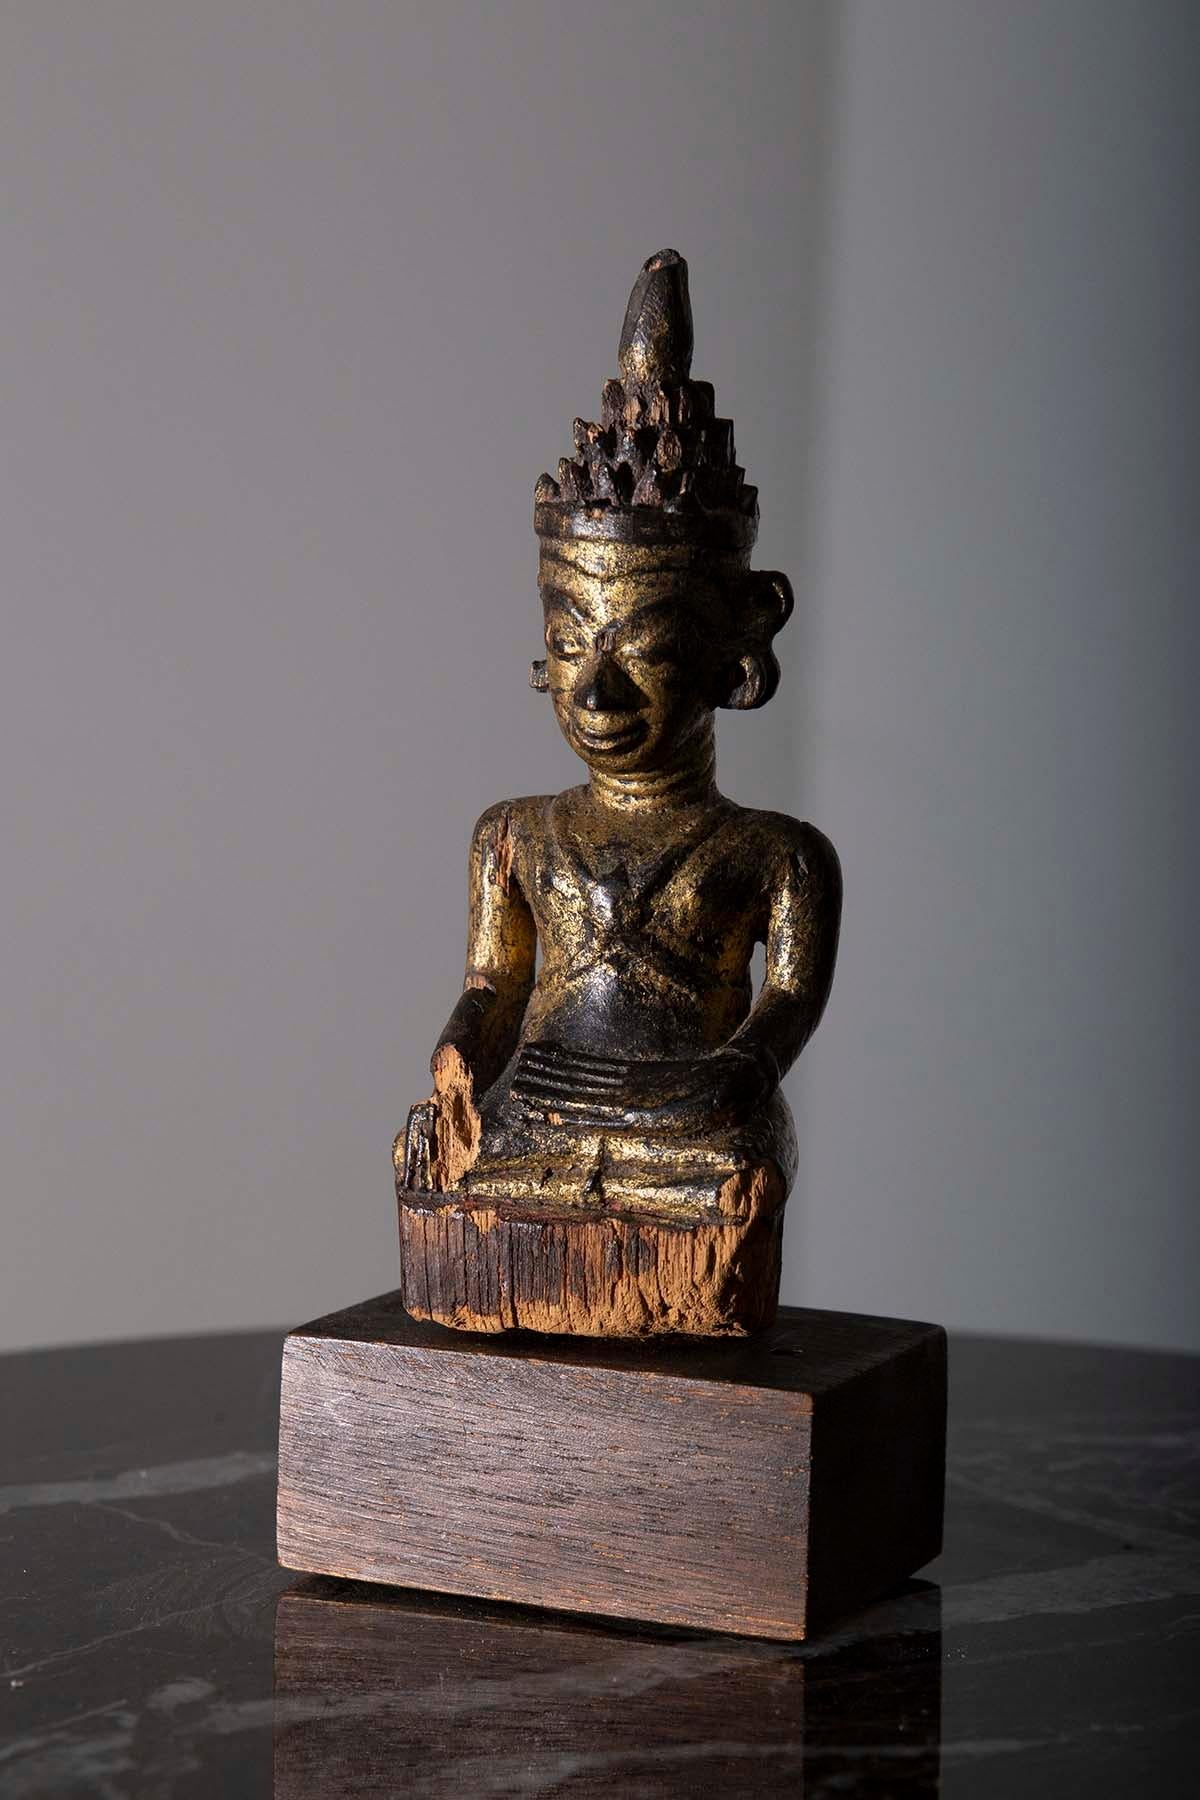 
Au milieu du XVIIIe siècle, dans le pays enchanteur de Birmanie, pendant la période Shan, est né un magnifique chef-d'œuvre de l'art spirituel : un extraordinaire Bouddha assis en bois couronné de Birmanie, souvent appelé le 